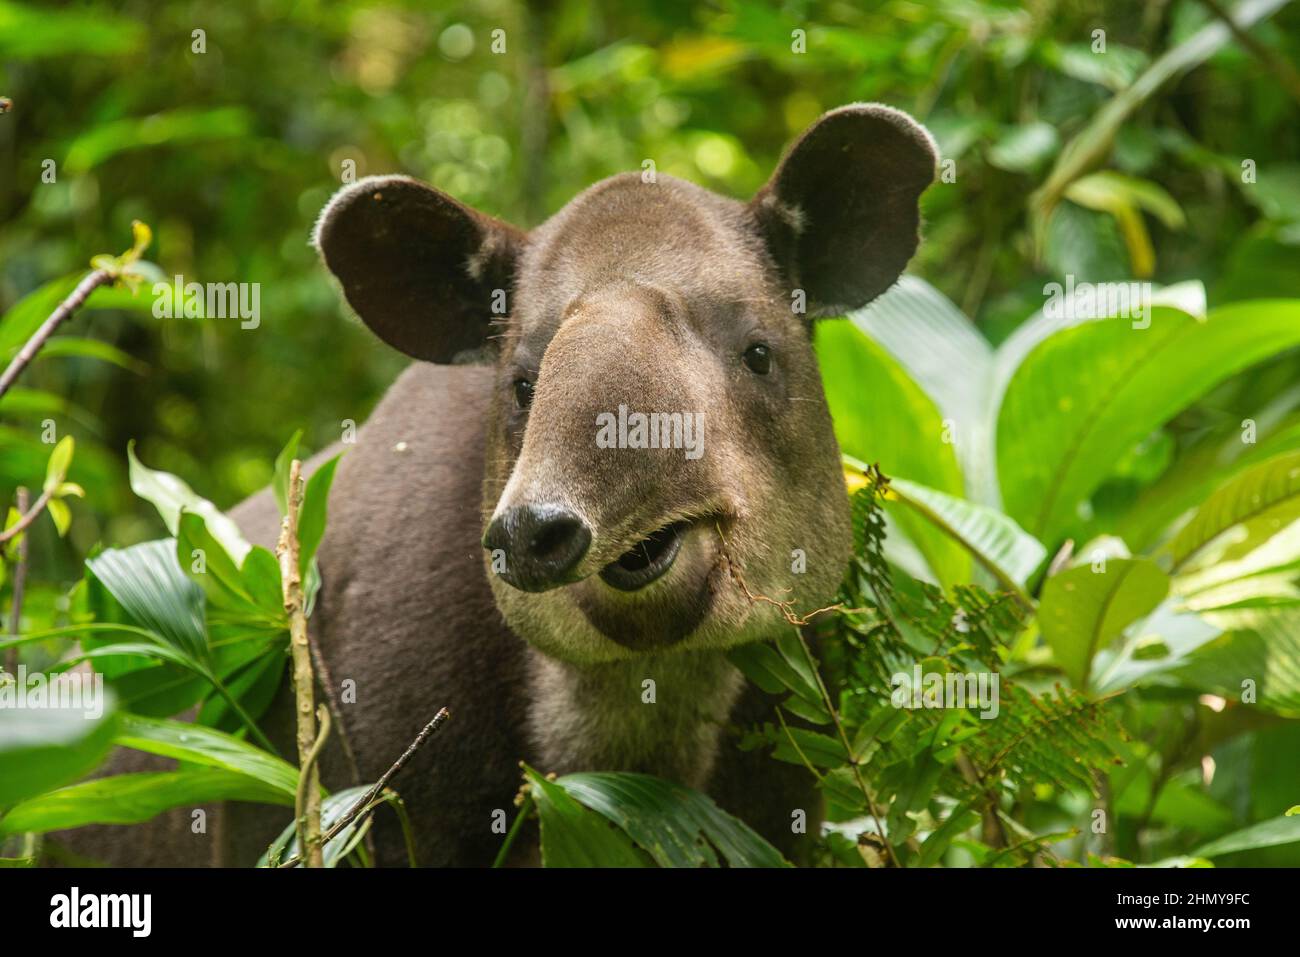 Baird's tapir (Tapirus bairdii), Tenorio Volcano National Park, Guanacaste, Costa Rica Stock Photo